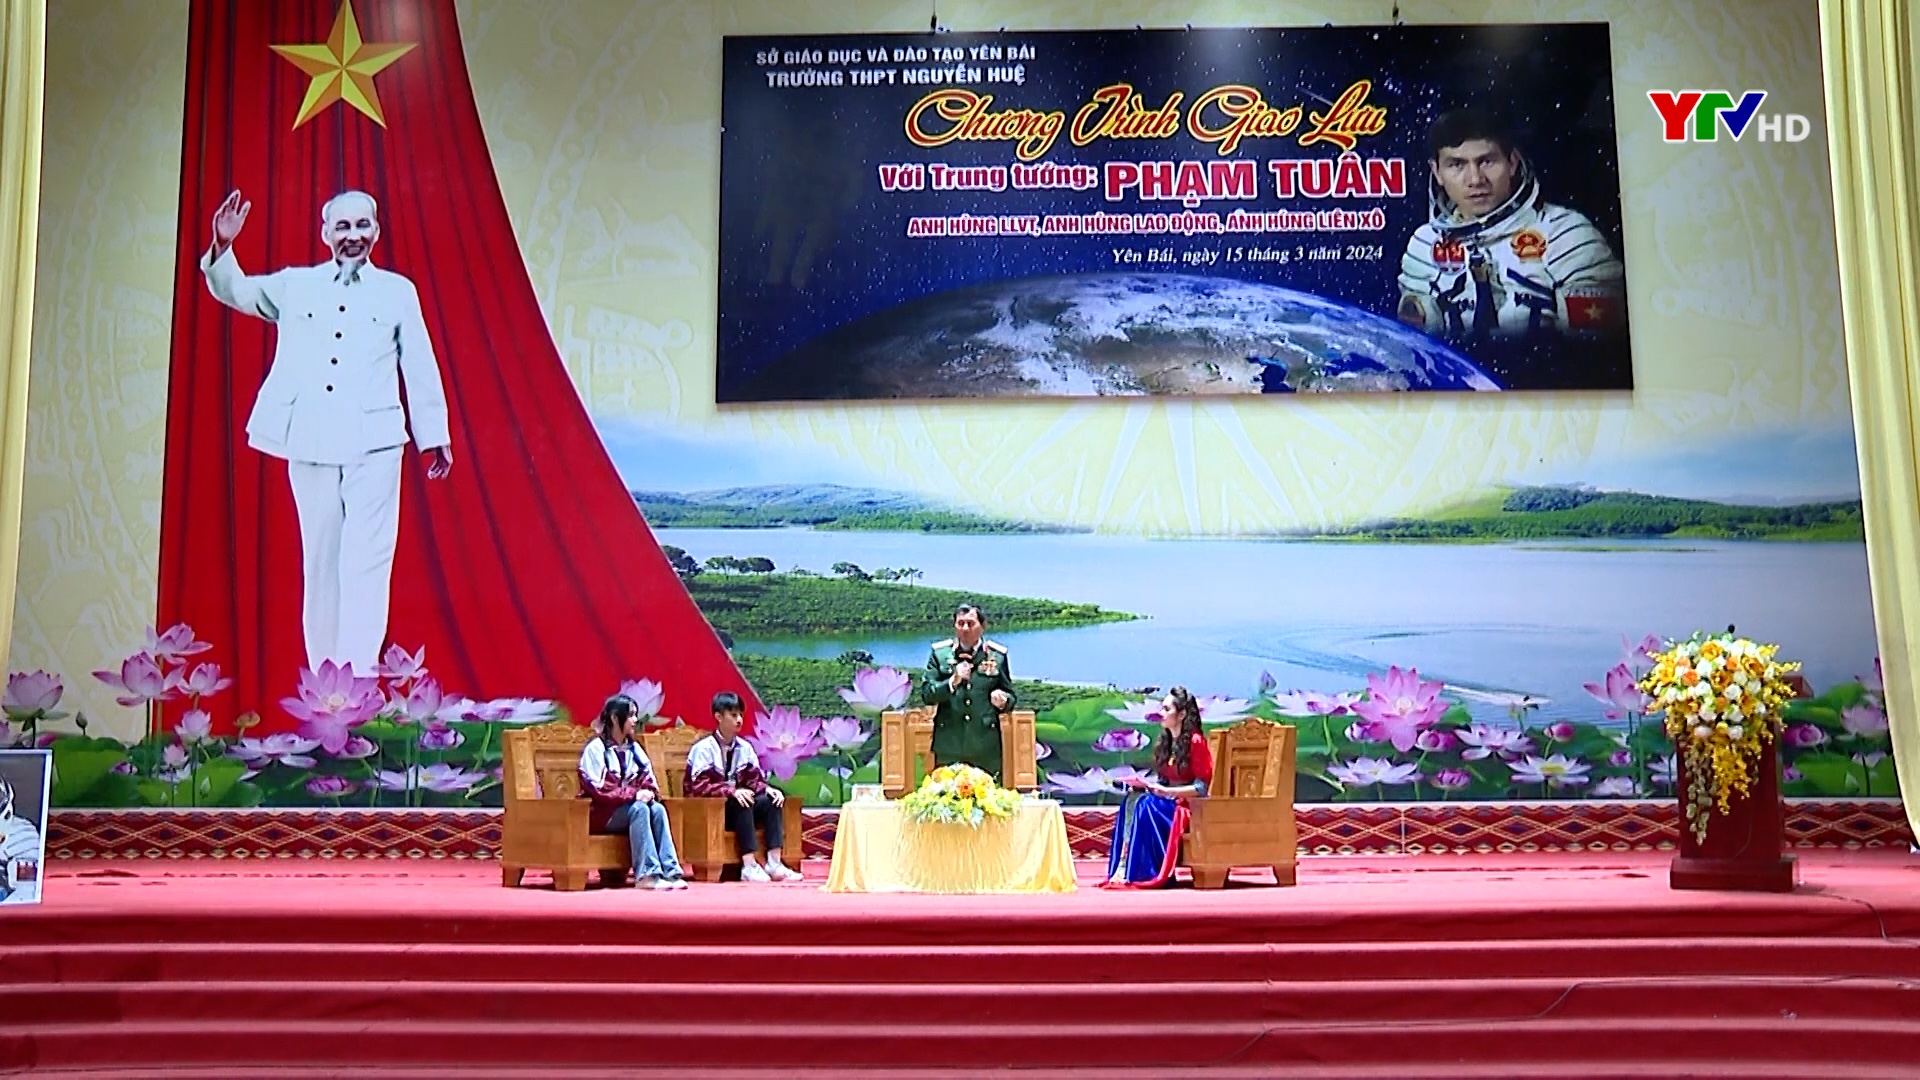 Trường THPT Nguyễn Huệ giao lưu với nhân chứng lịch sử - Trung tướng, anh hùng Phạm Tuân